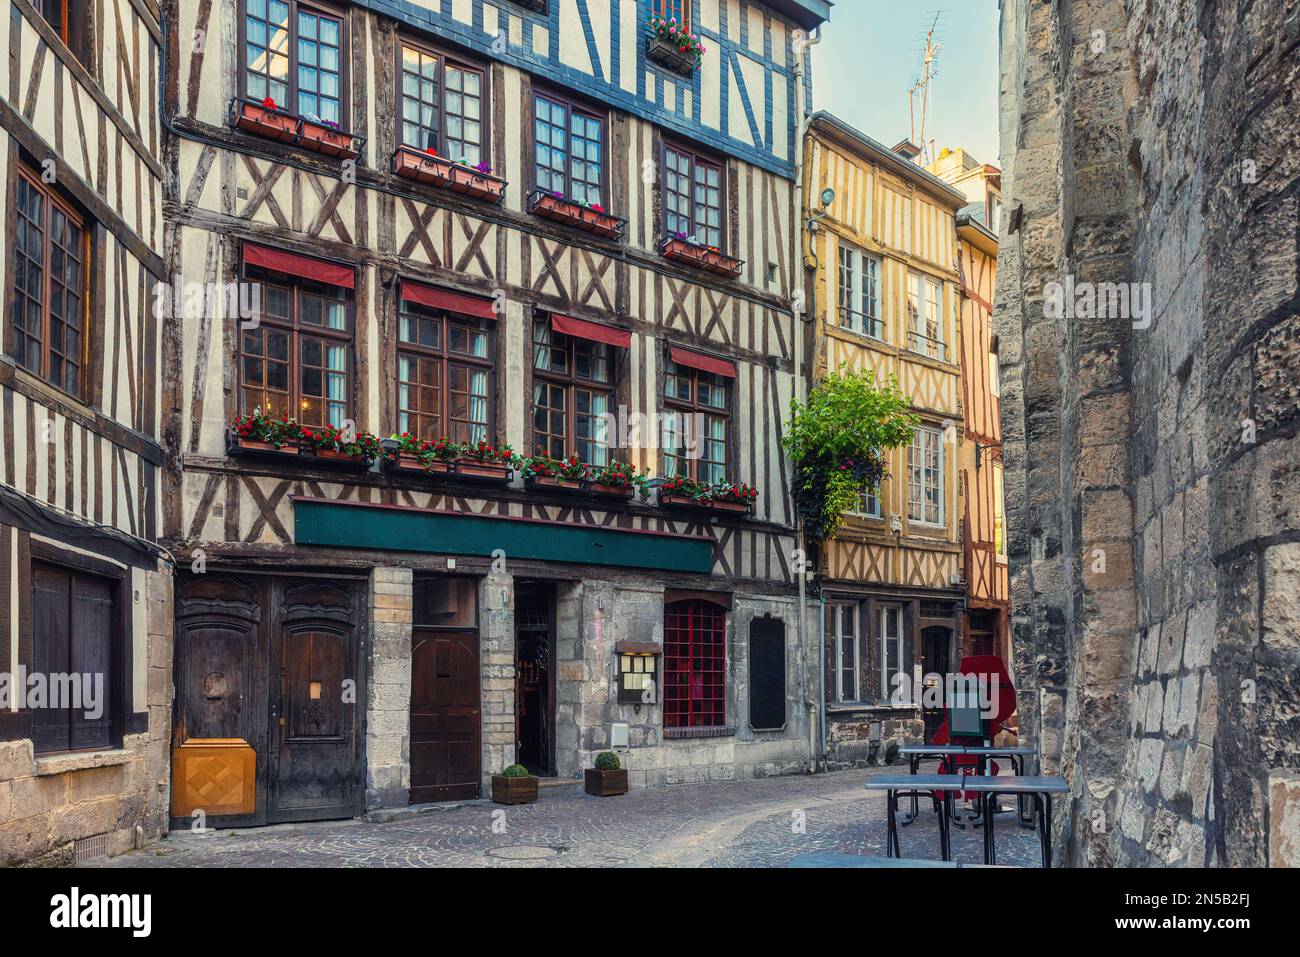 Vecchia strada accogliente con case in legno a Rouen, Normandia, Francia. Architettura e punti di riferimento di Rouen, Normandie Foto Stock